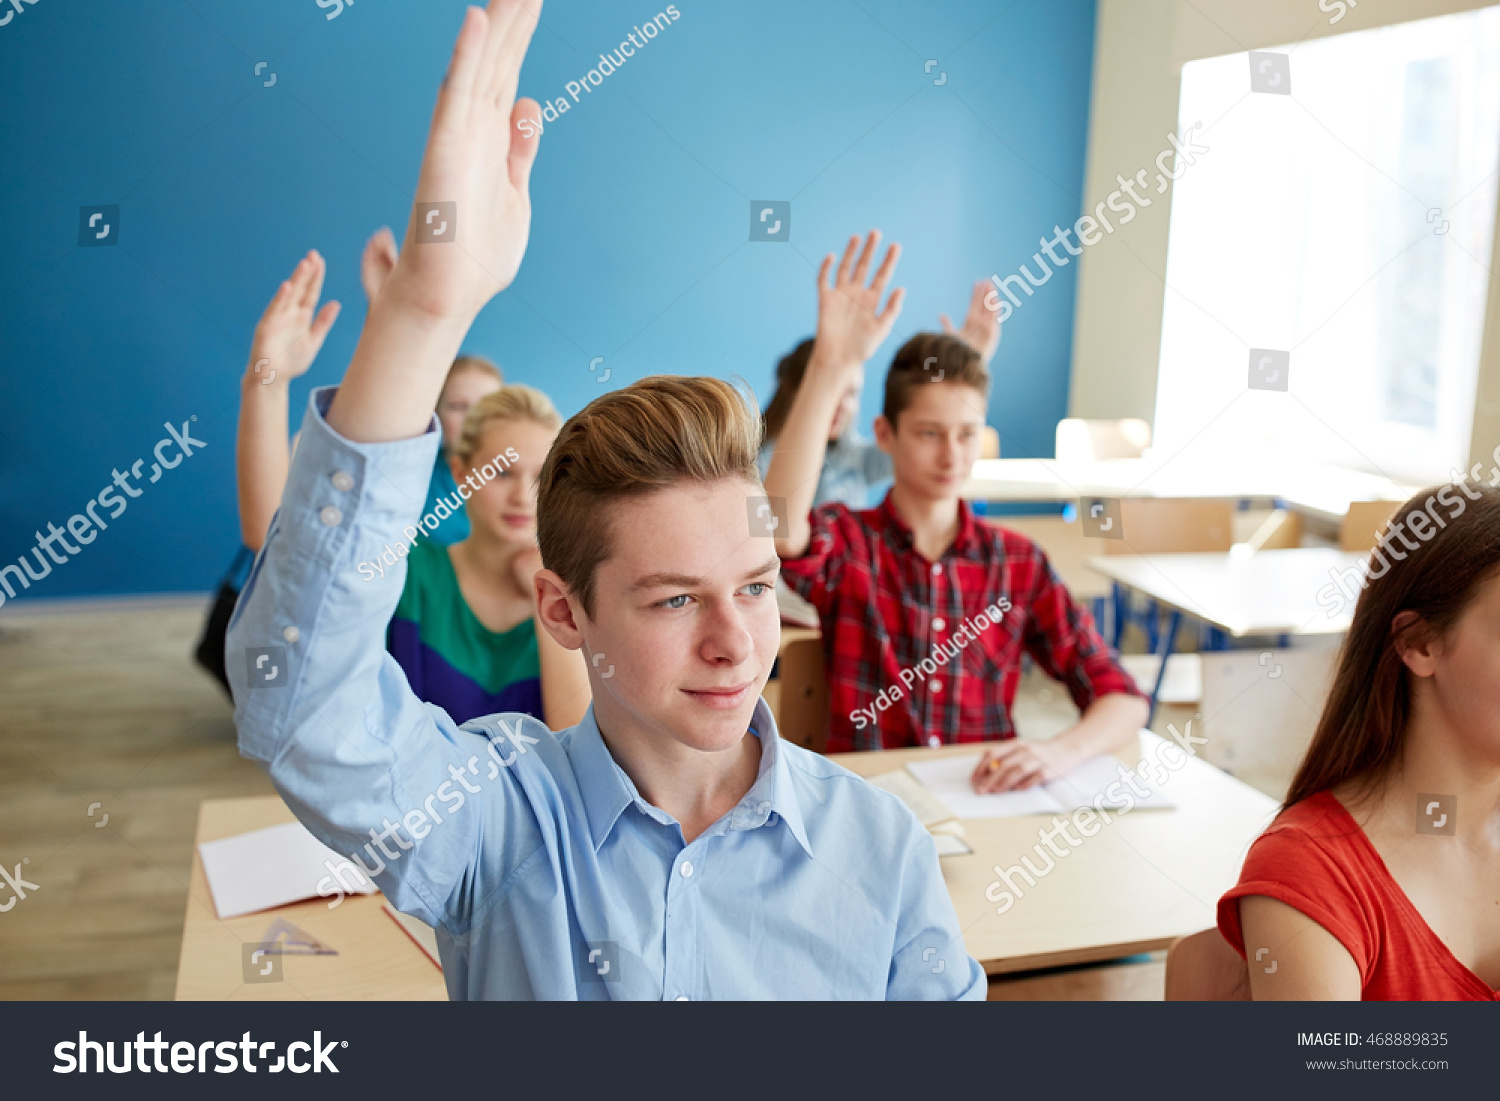 Ученик срывает урок. Подростки в школе поднимают руки. Школьник поднимает руку. Студент тянет руку. Школьник тянет руку.